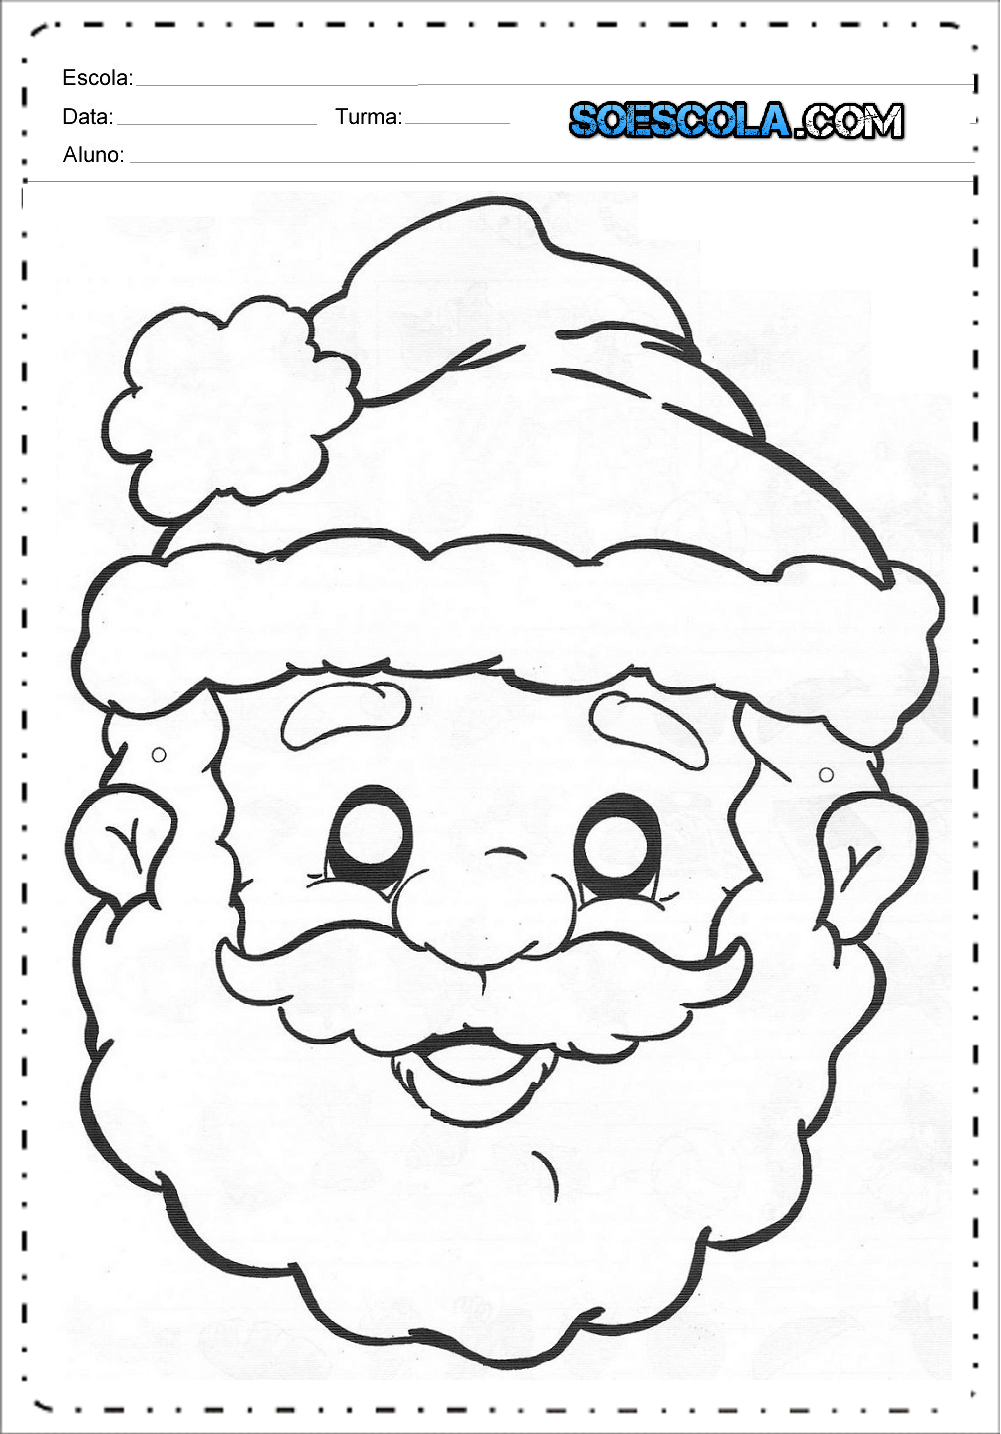 Máscaras de Natal - Para Imprimir - Papai Noel, Rena e Boneco de Neve